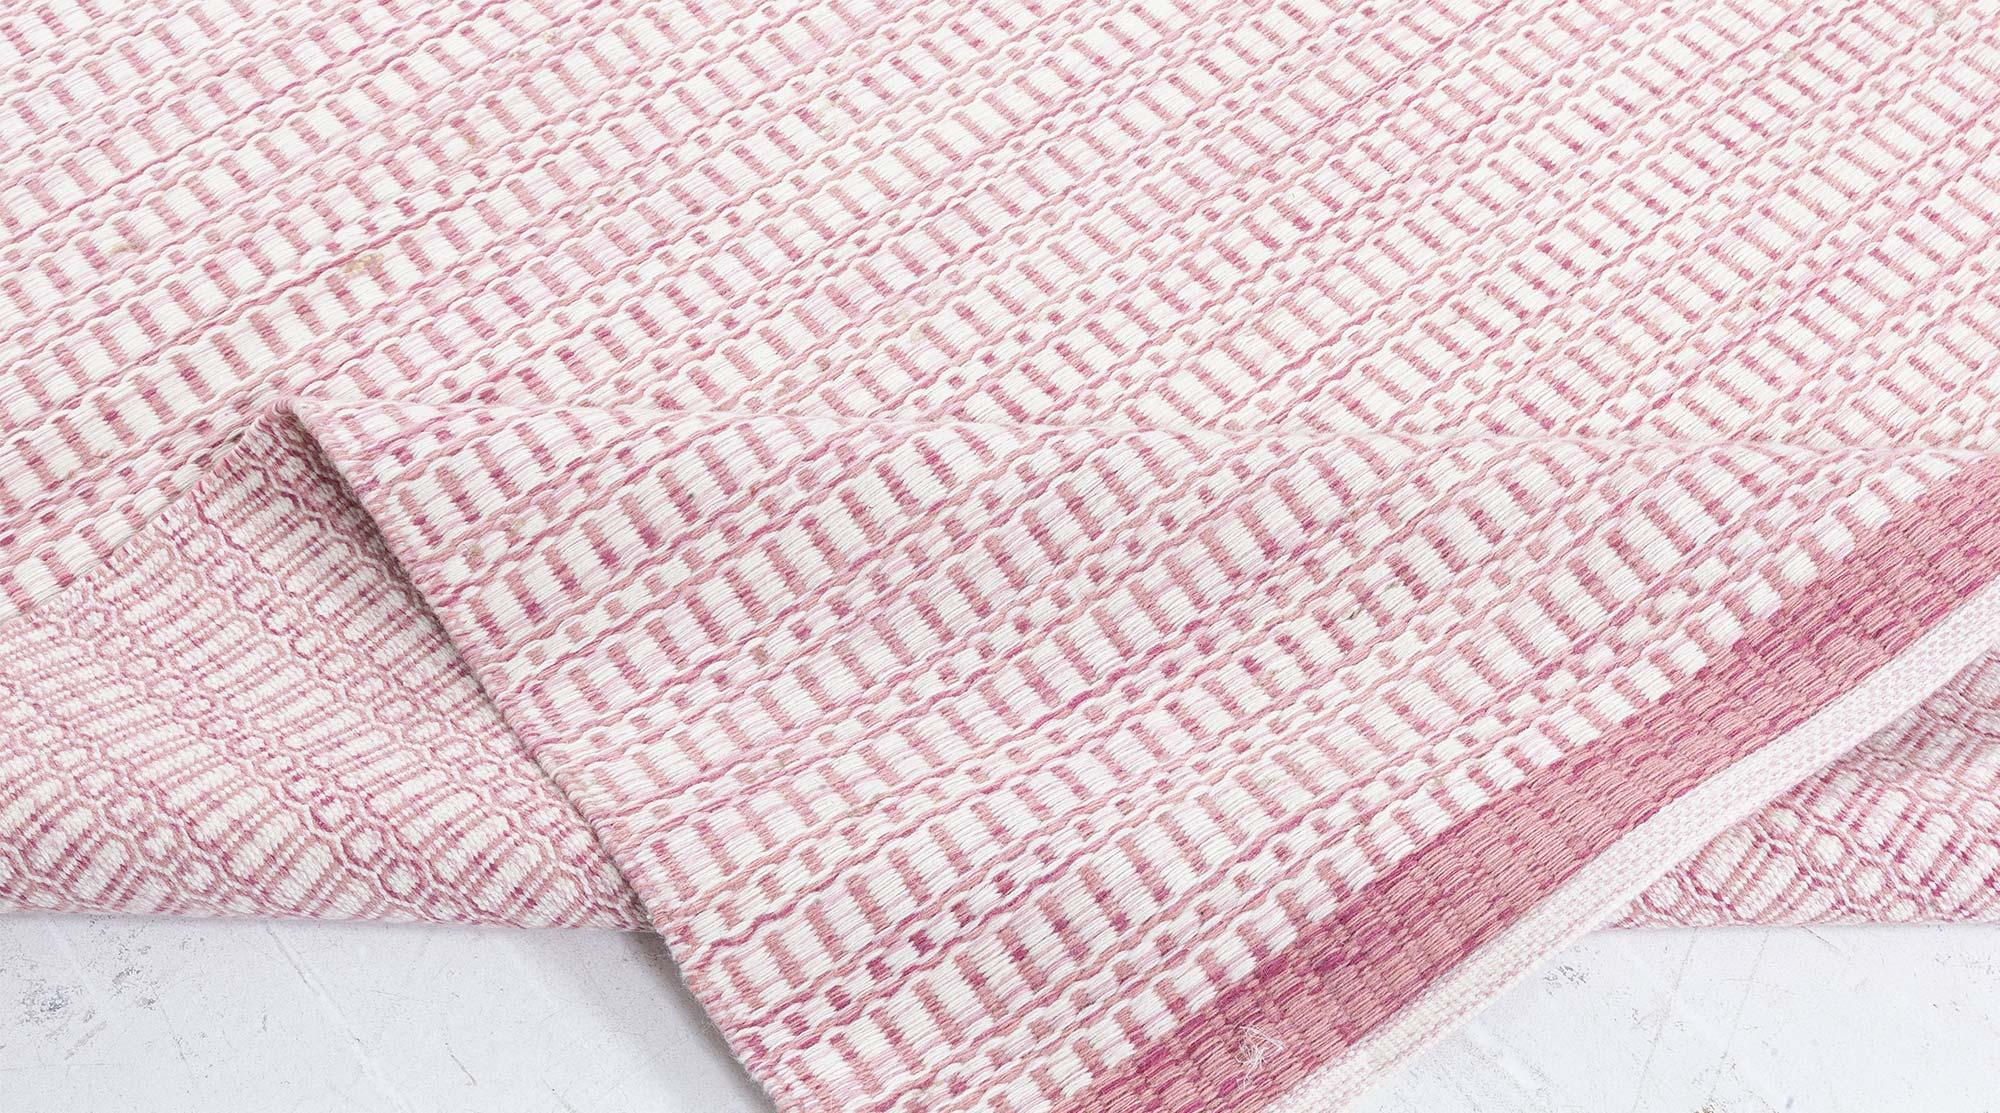 Wool Modern Pink and Beige Flat Weave Rug by Doris Leslie Blau For Sale